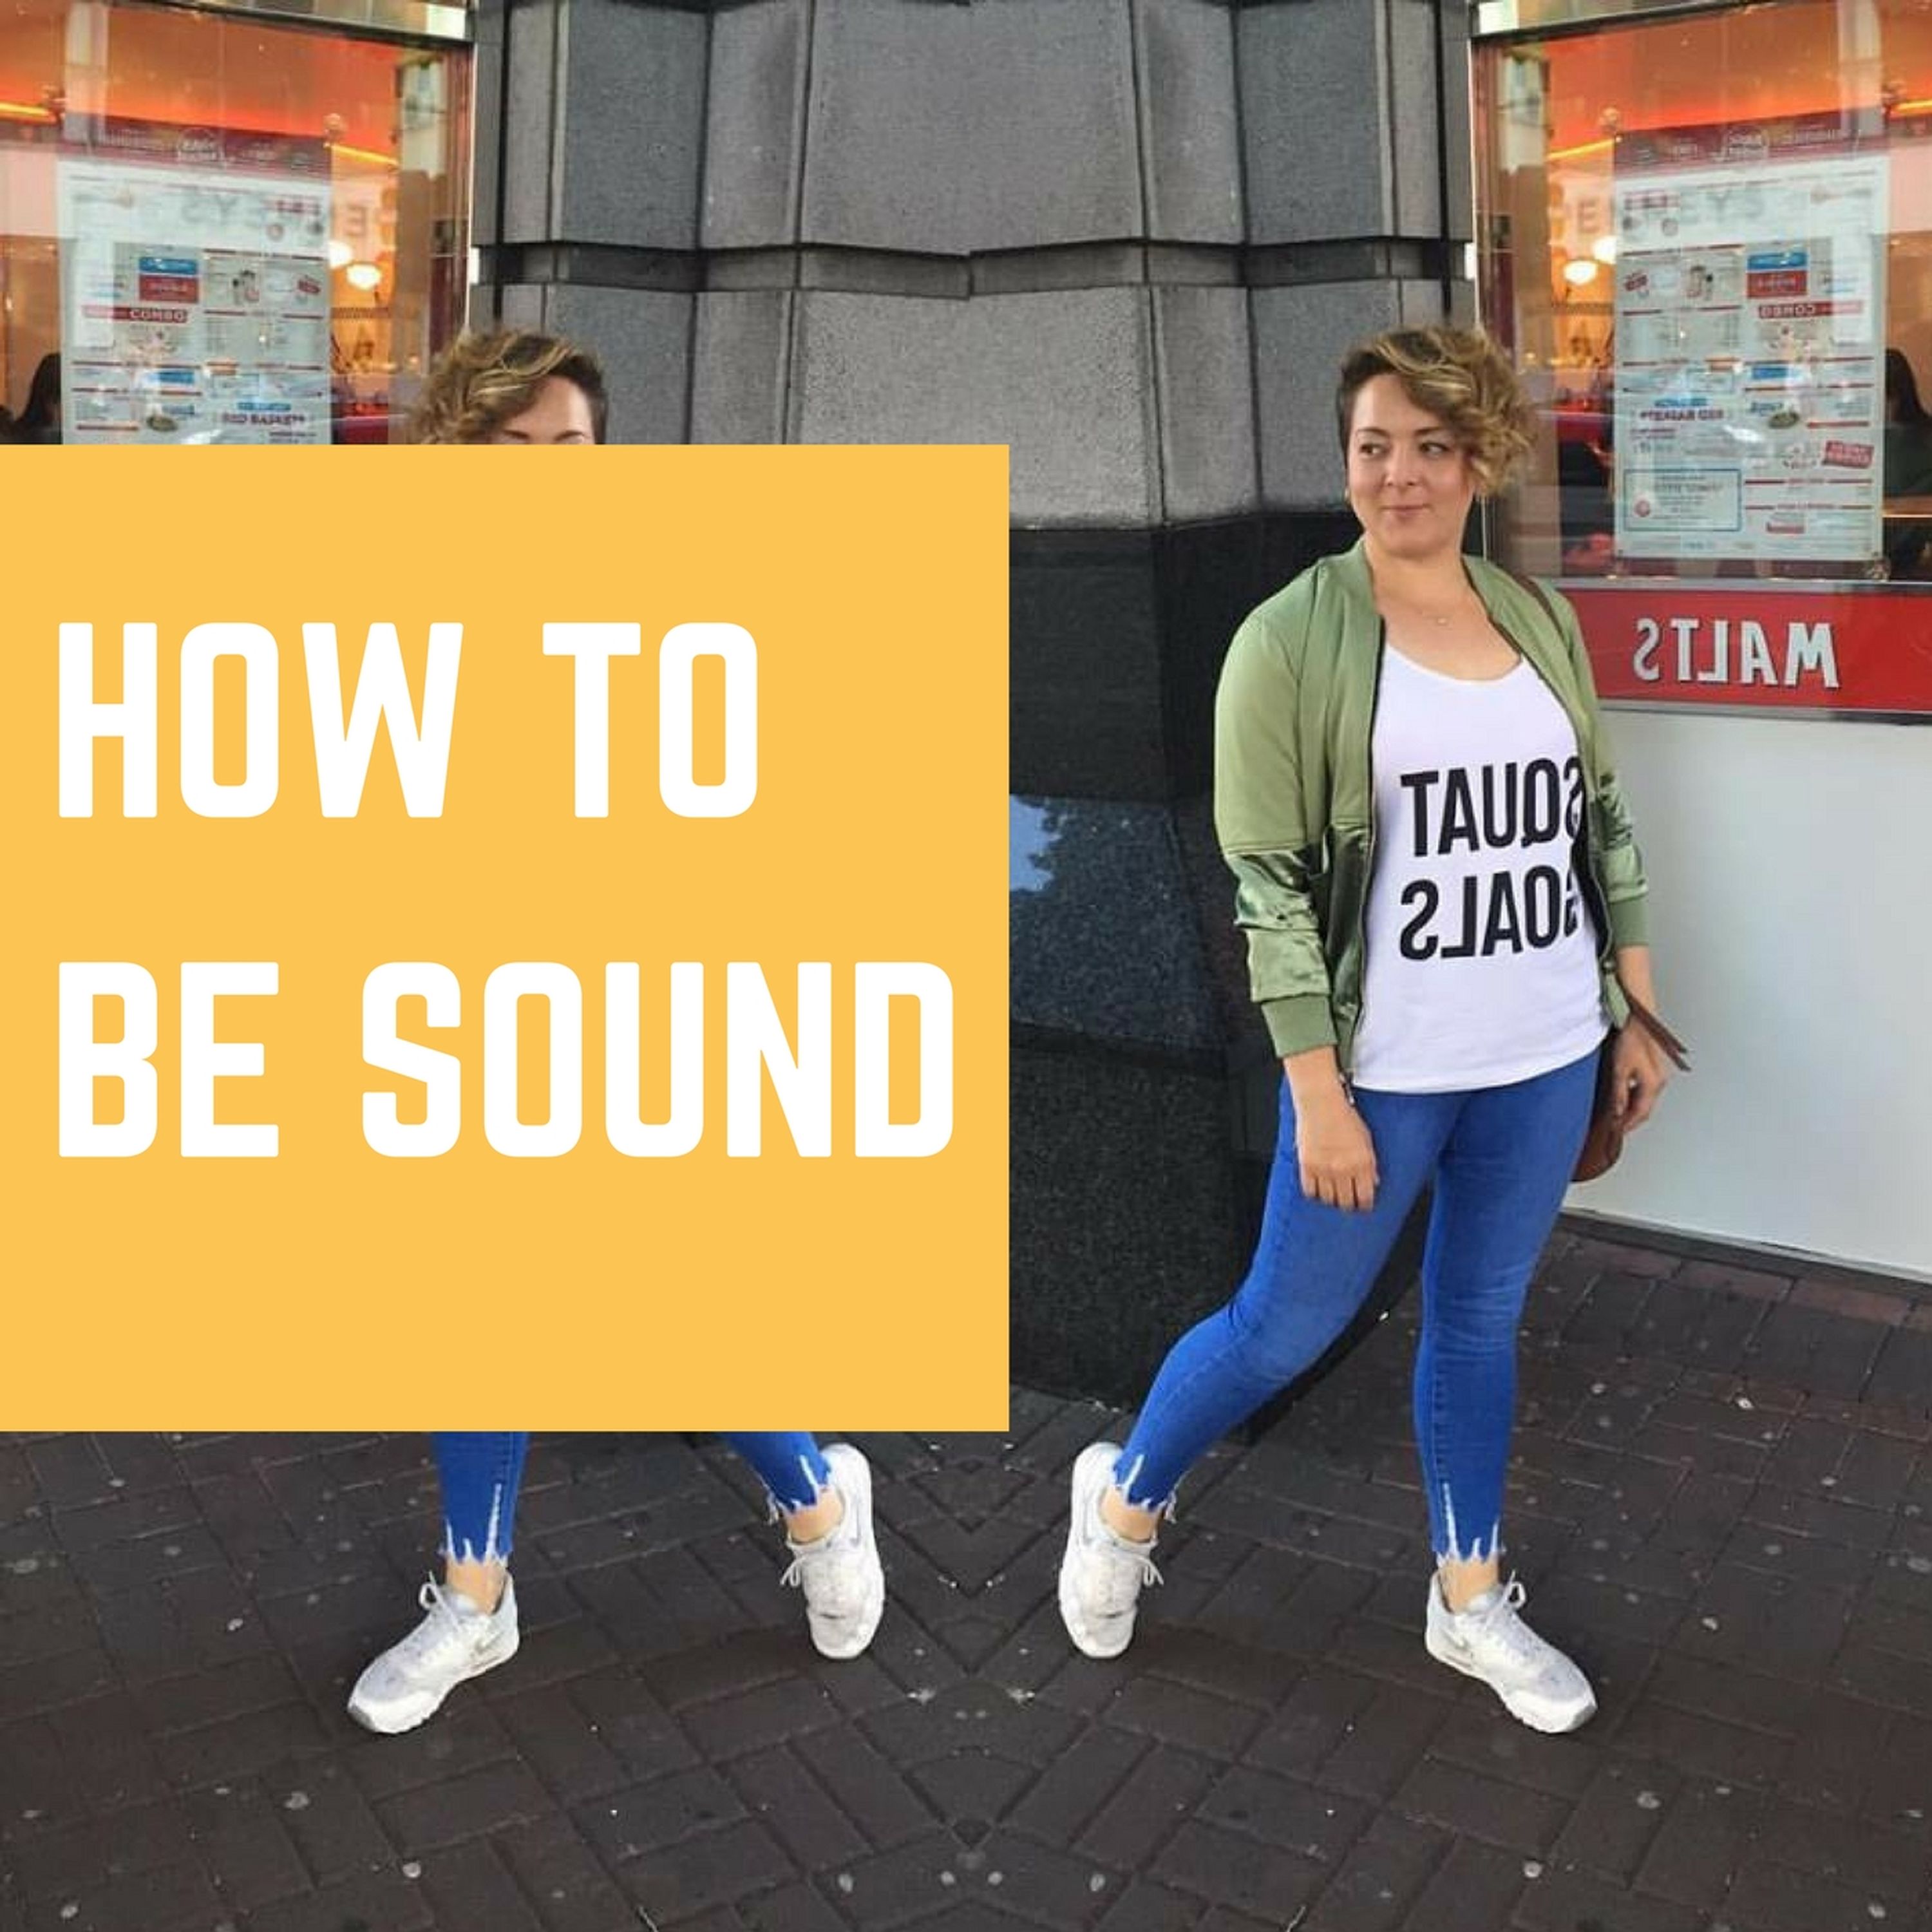 Jennifer Stevens on how to be sound